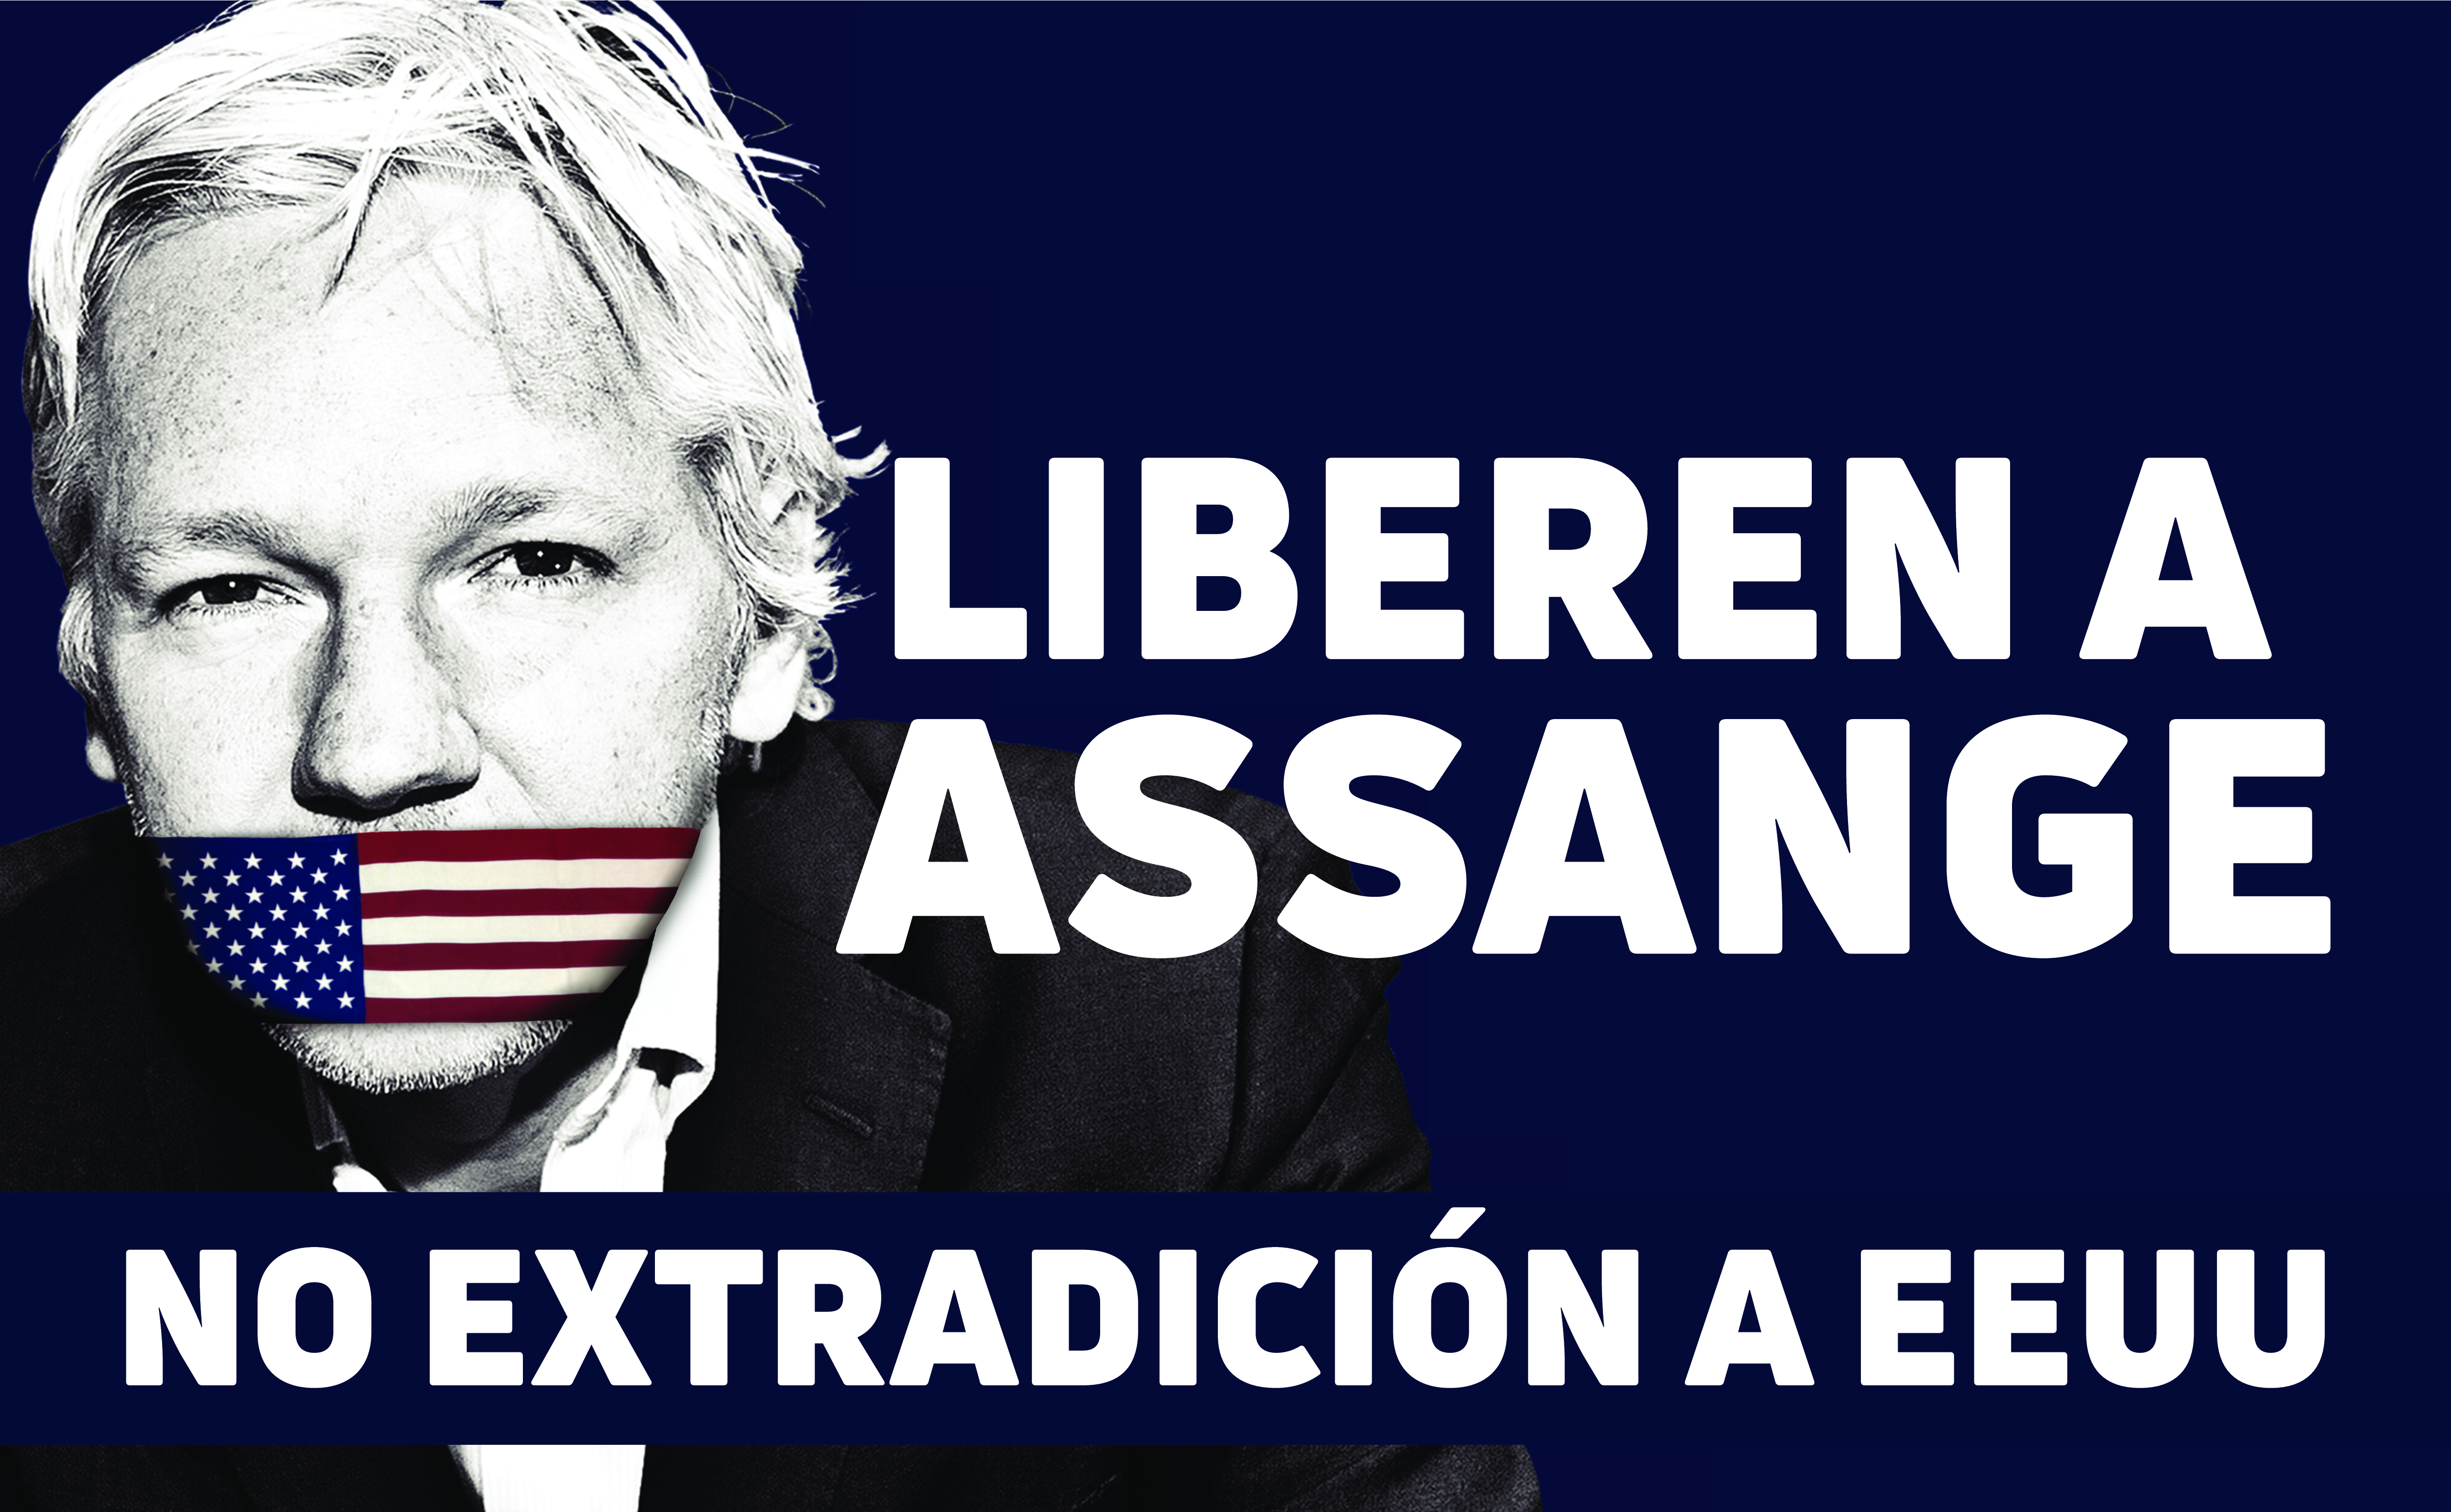 archivetempfree-assange-banner-130x80-es.pdf.png